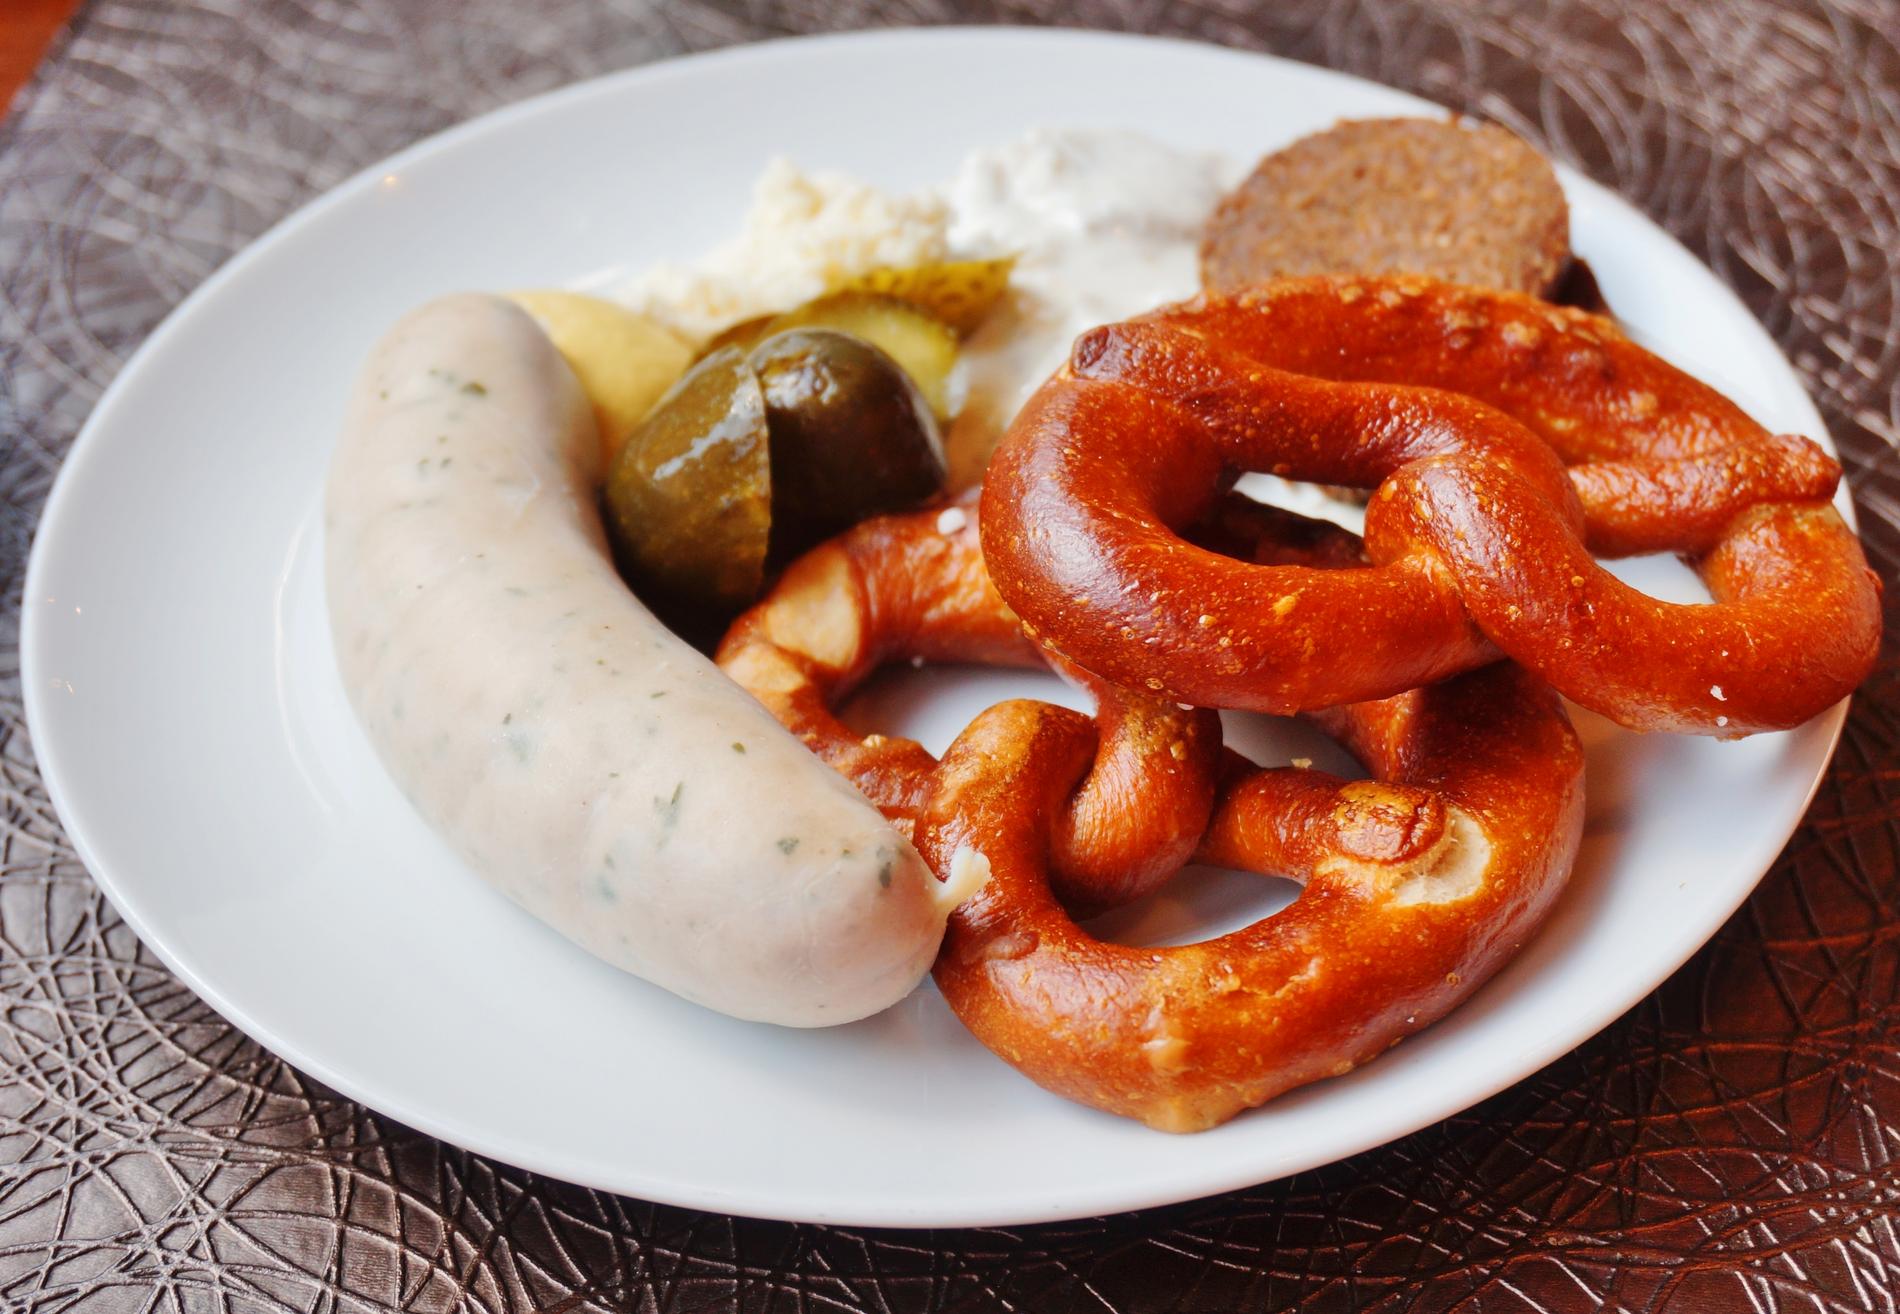 KRAFTKOST: Slik kan en tysk frokost se ut. Men som oftest består den av ost, skinke av en eller annen type og godt brød.